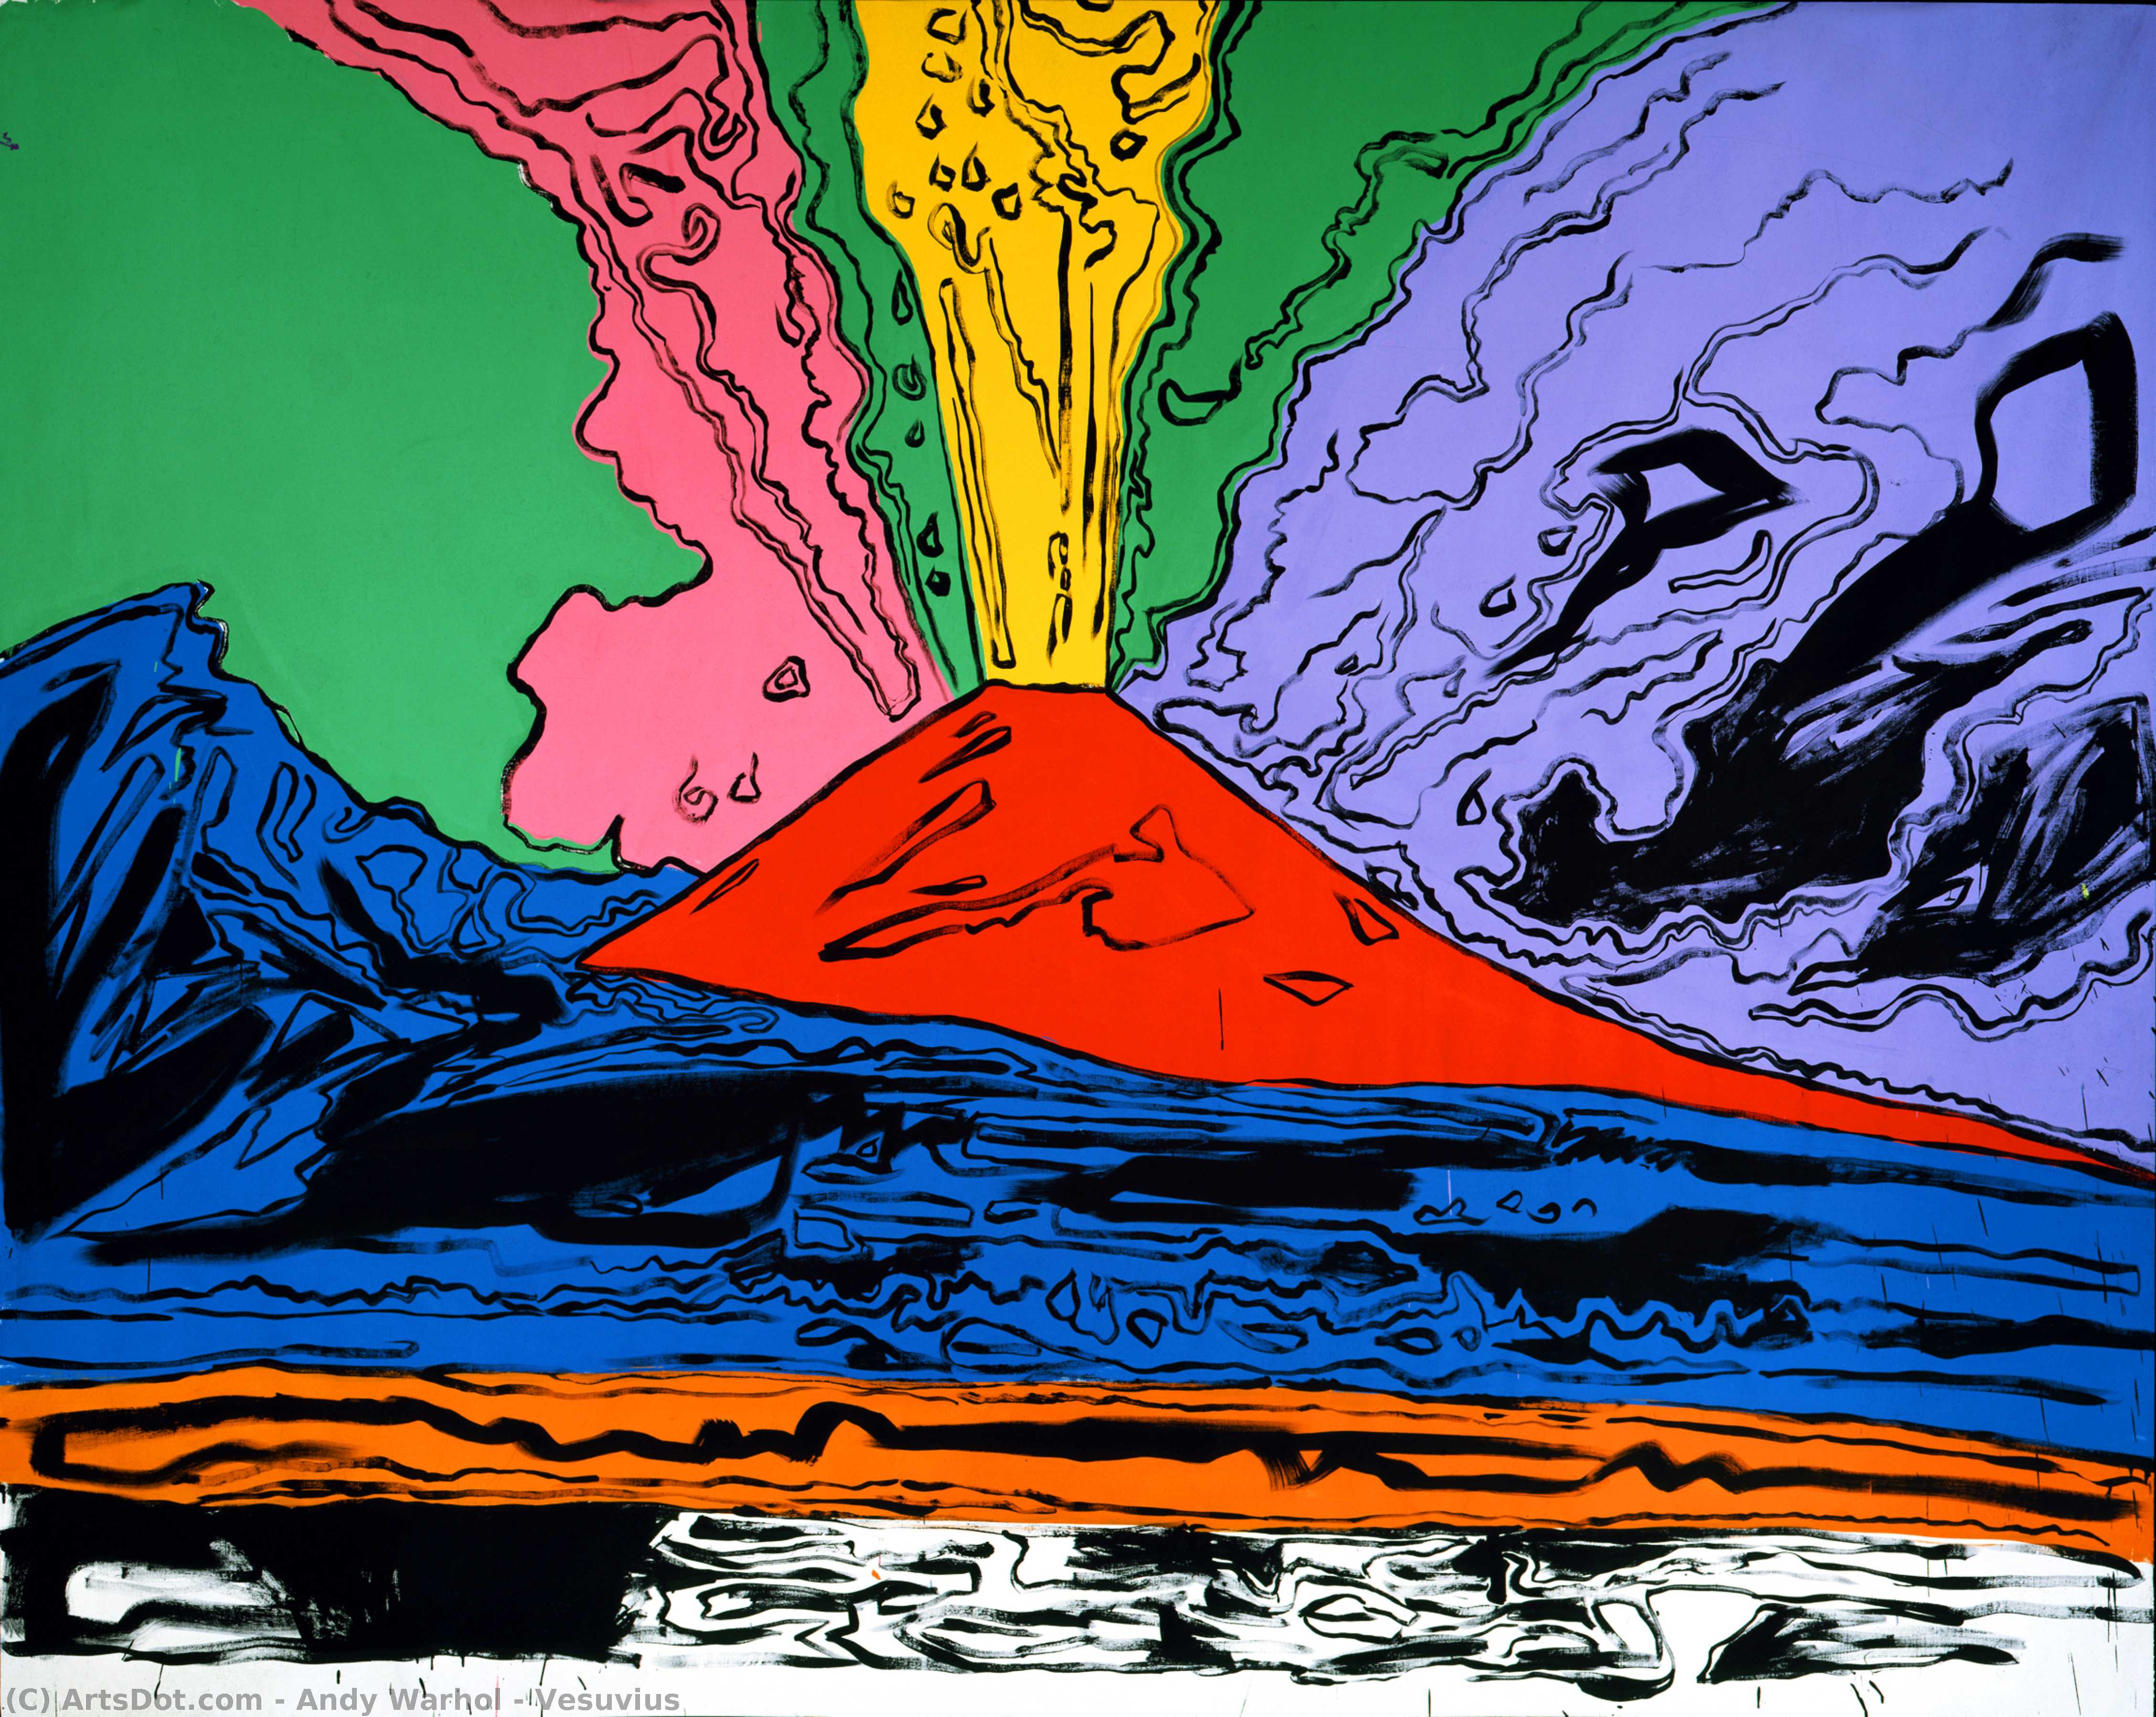 WikiOO.org - Encyclopedia of Fine Arts - Malba, Artwork Andy Warhol - Vesuvius